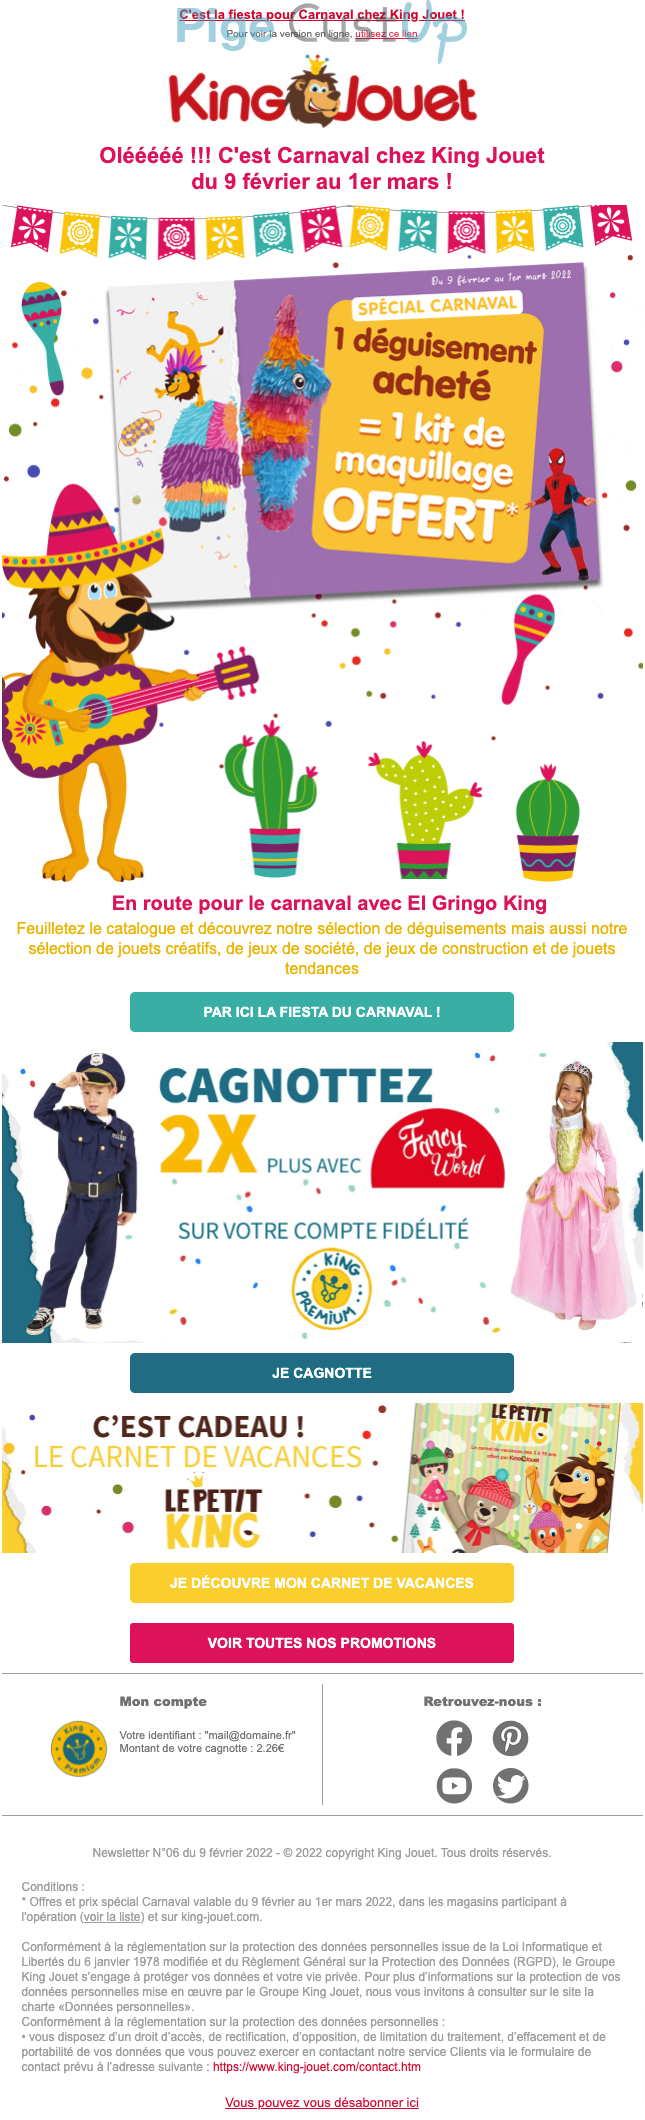 Exemple de Type de media  e-mailing - King Jouet - Marketing relationnel - Calendaire (Noël, St valentin, Vœux, …)